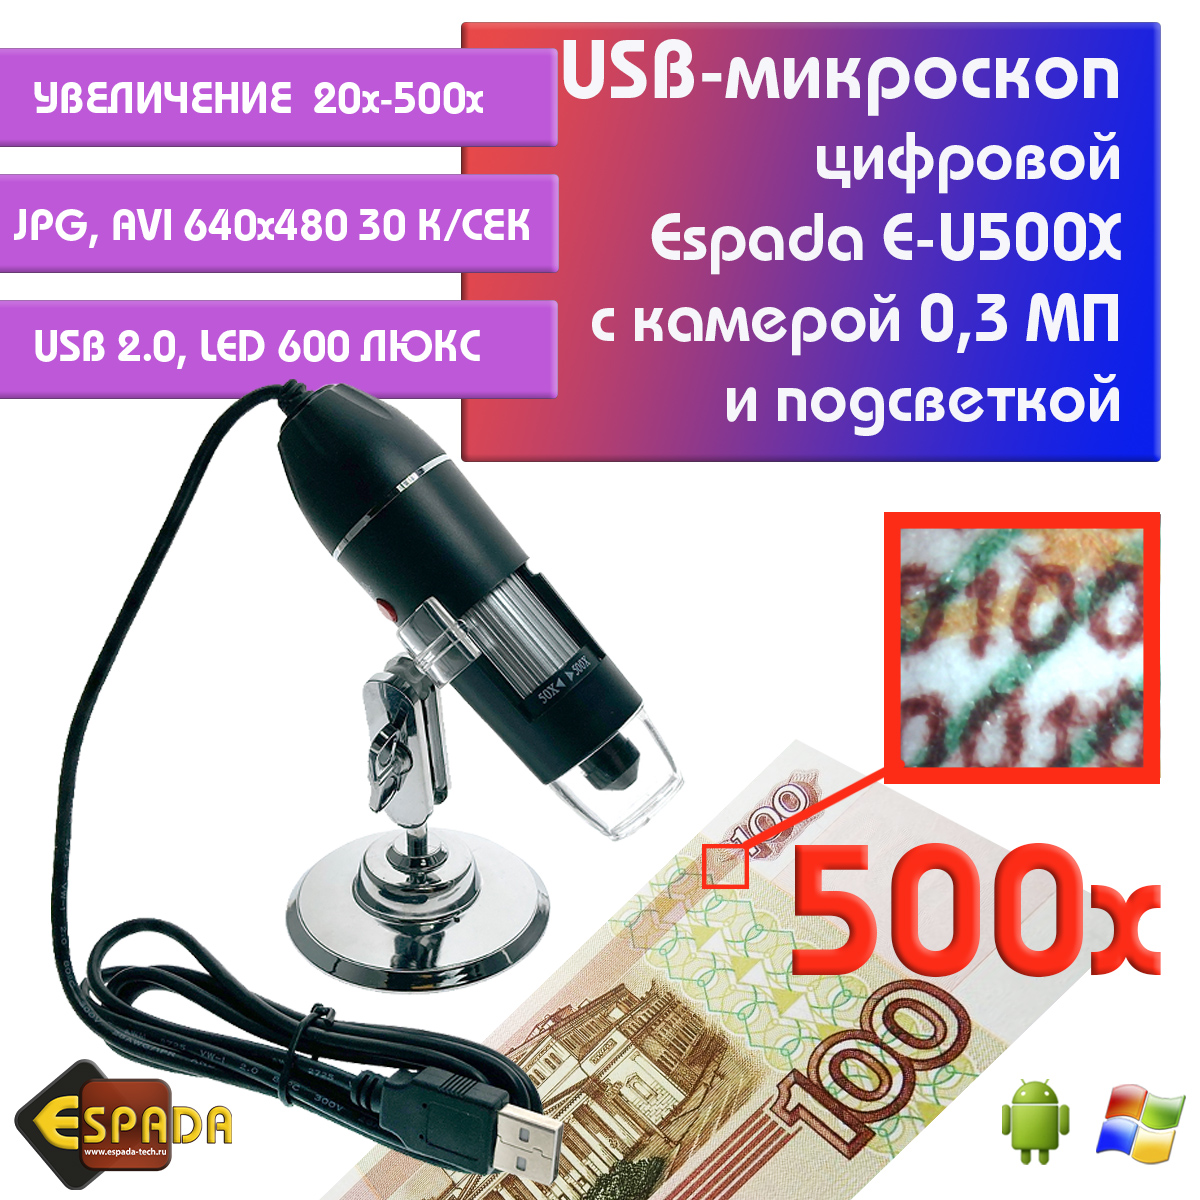 Портативный цифровой USB-микроскоп Espada E-U500X c камерой 0,3 МП и увеличением 500x цифровой микроскоп микмед wifi 2000х 5 0